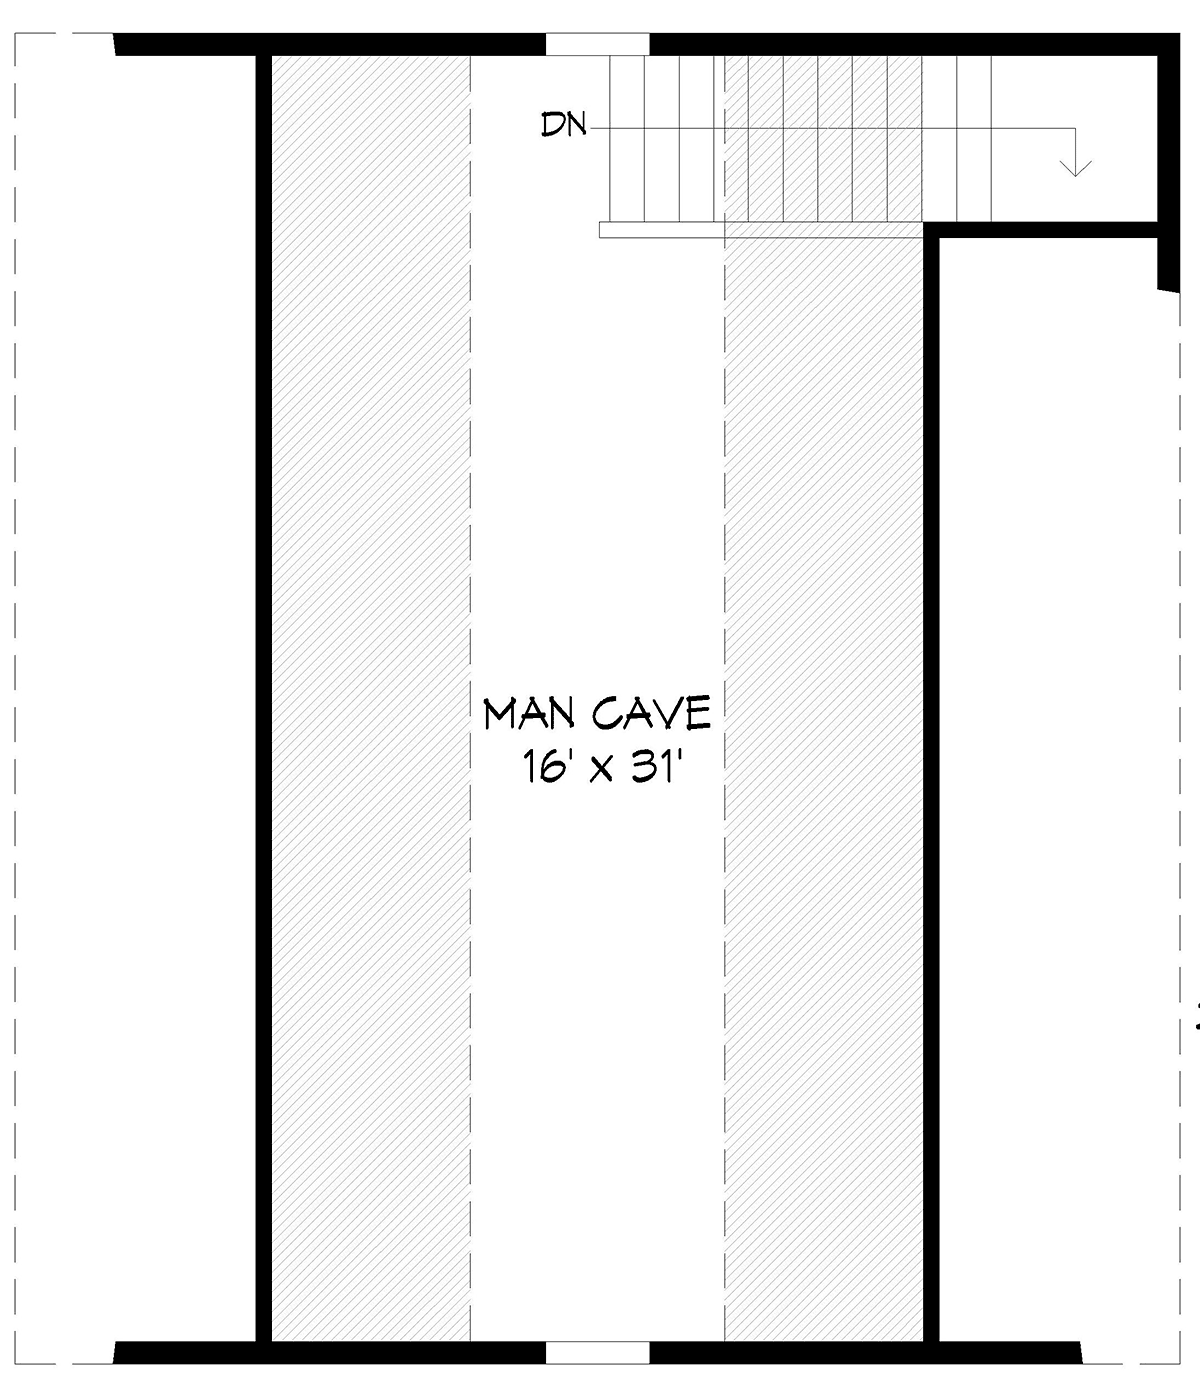 Garage-Living Plan 81520 Level Two